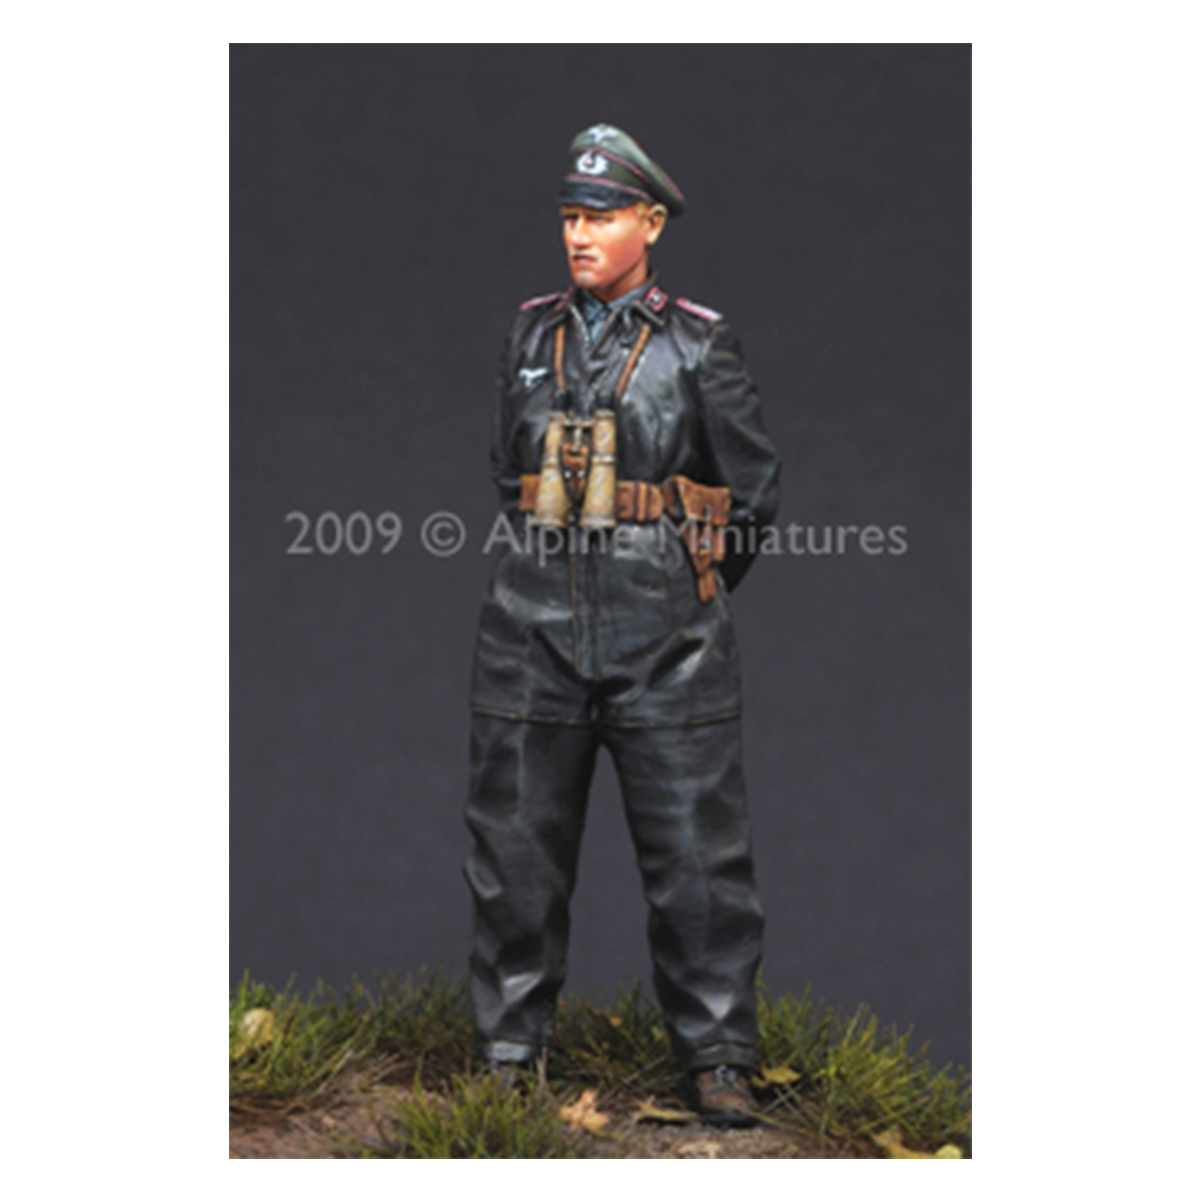 Alpine Miniatures – German Heer Panzer Crew #1 1/35